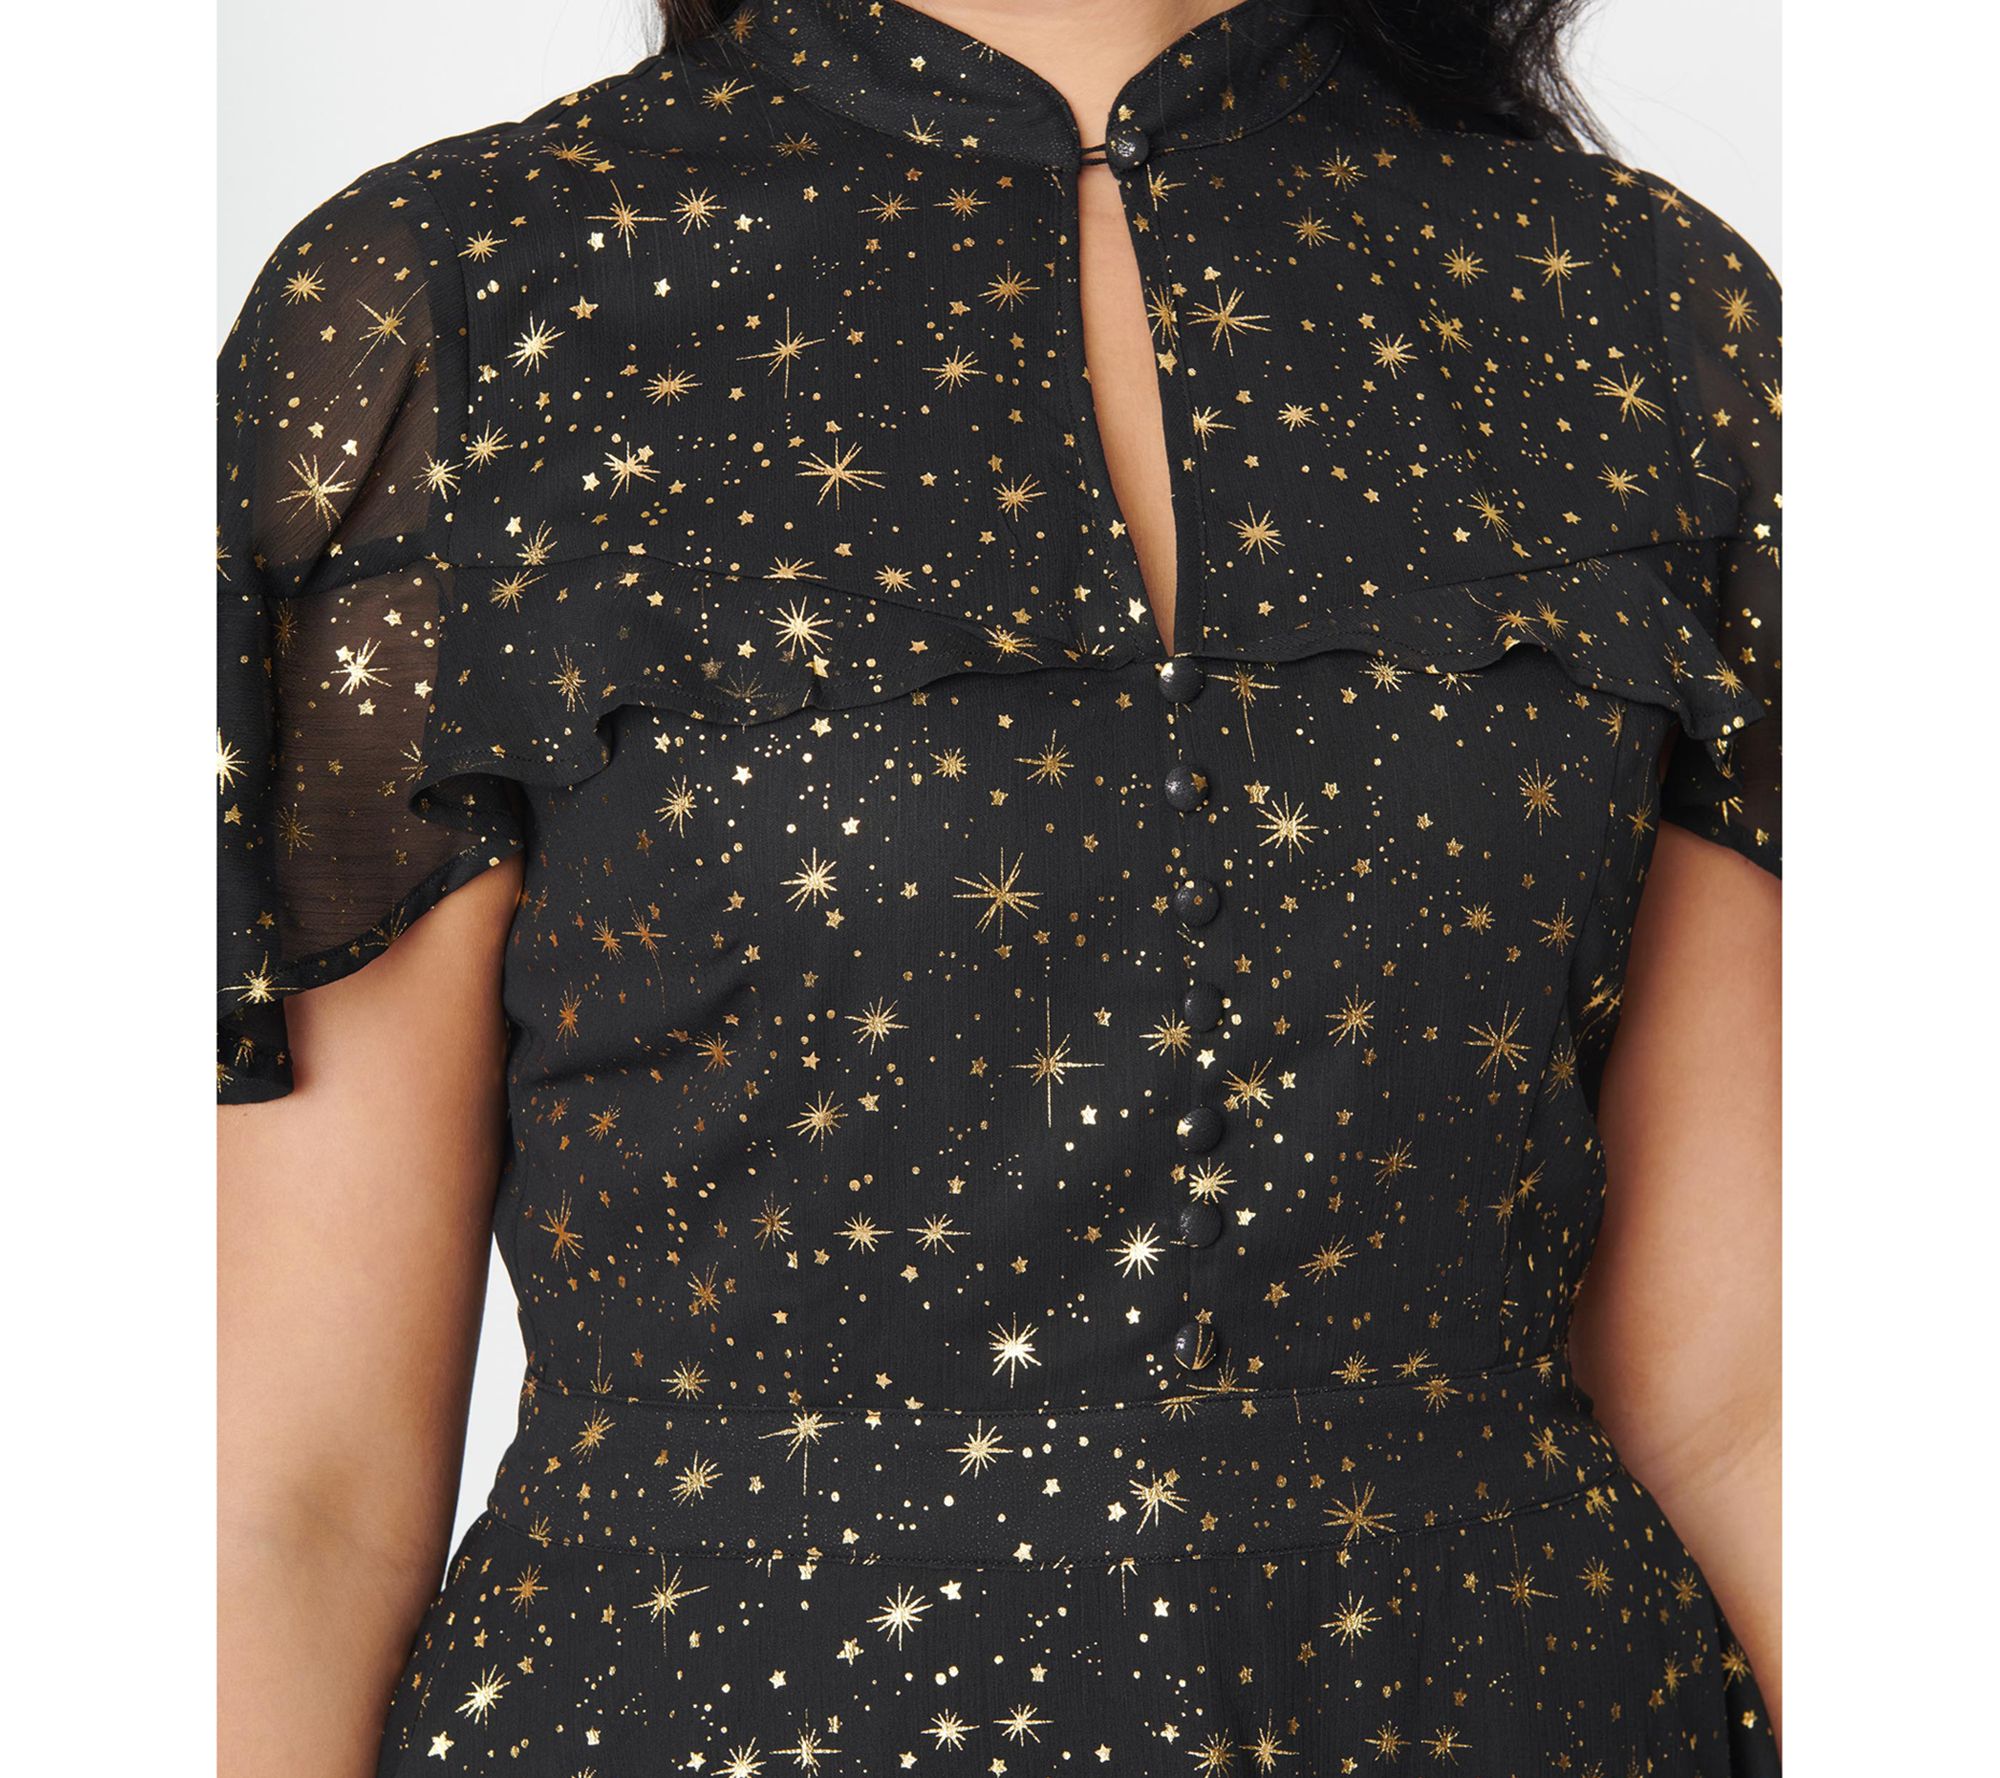 Unique Vintage Black & Gold Star Capulet Fit &Flare Dress - QVC.com